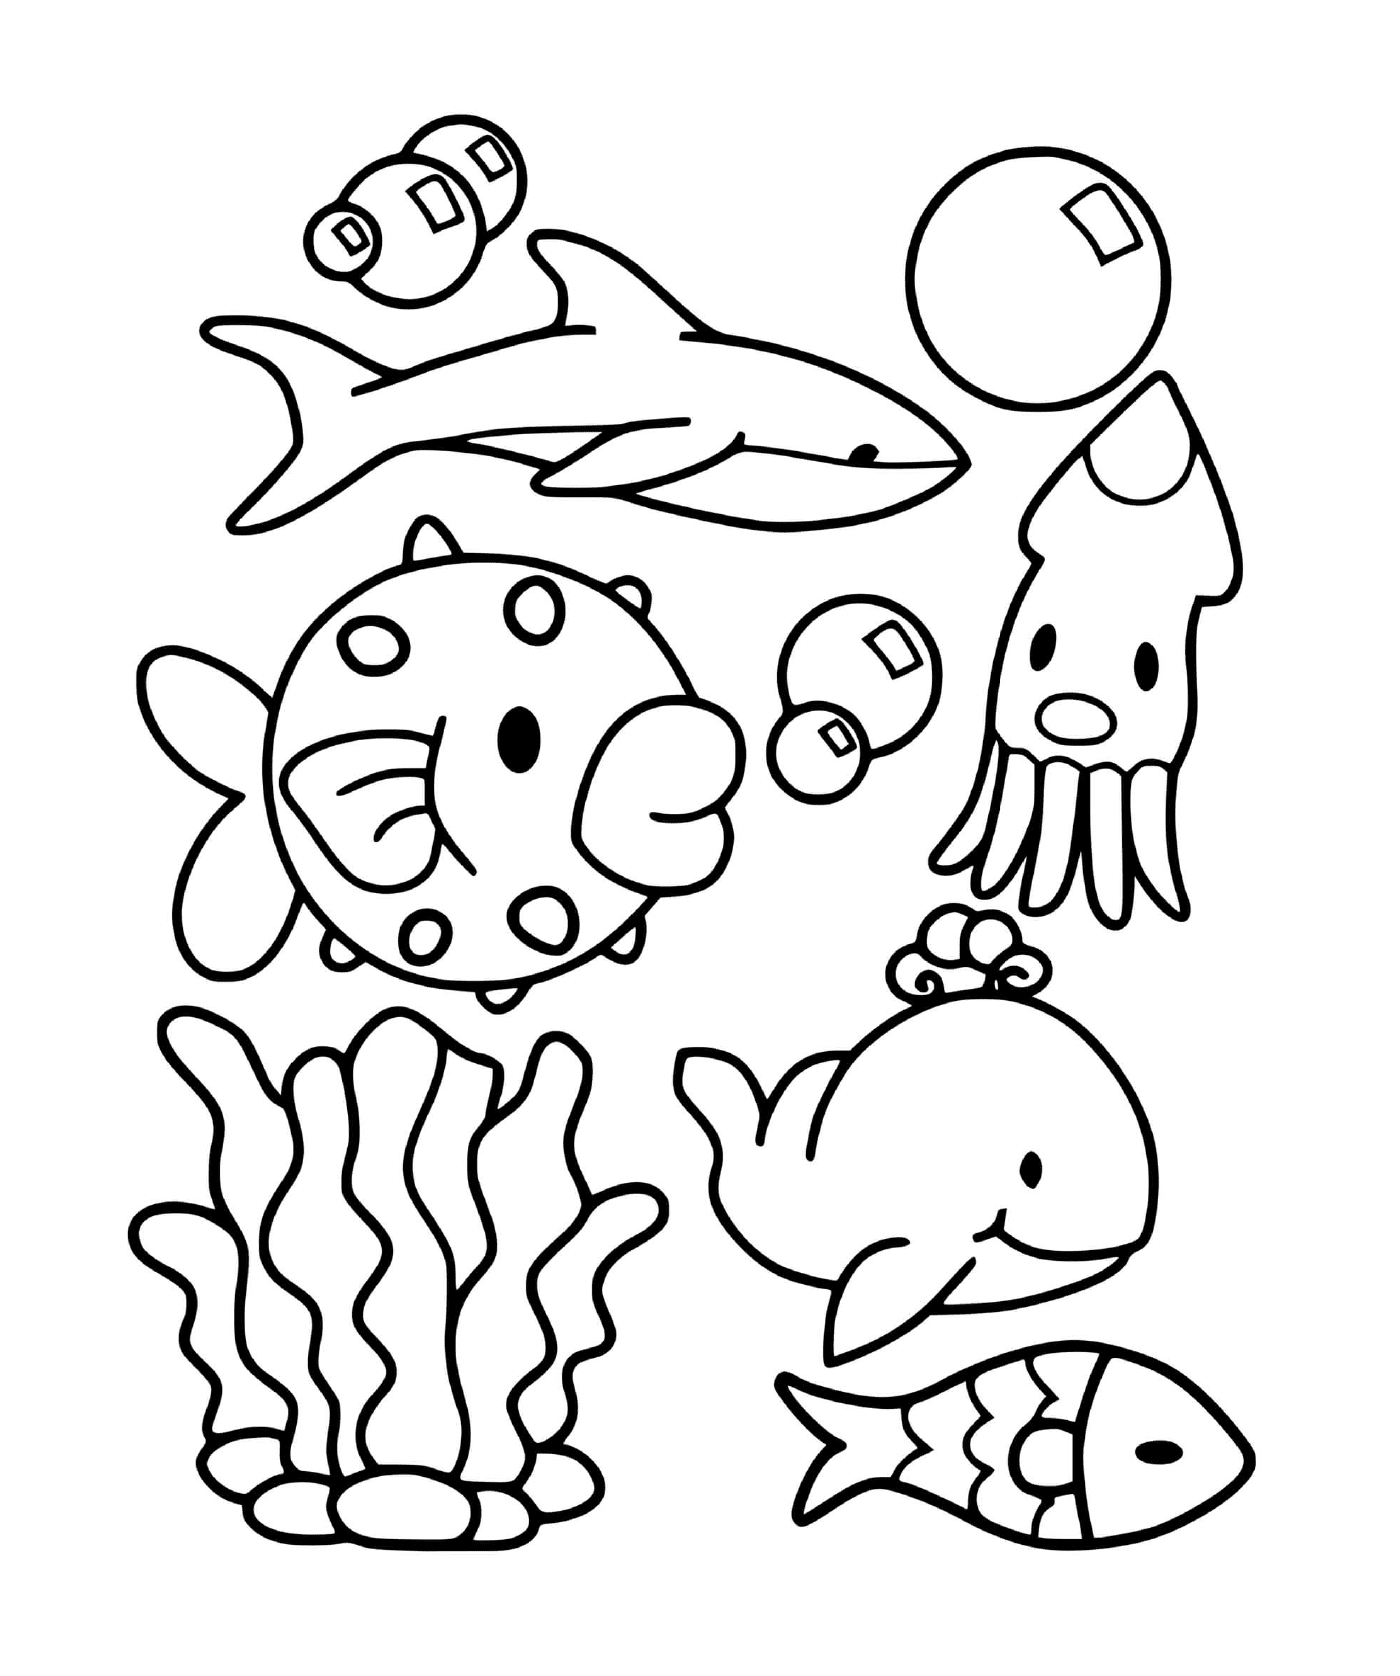  一组海洋动物 